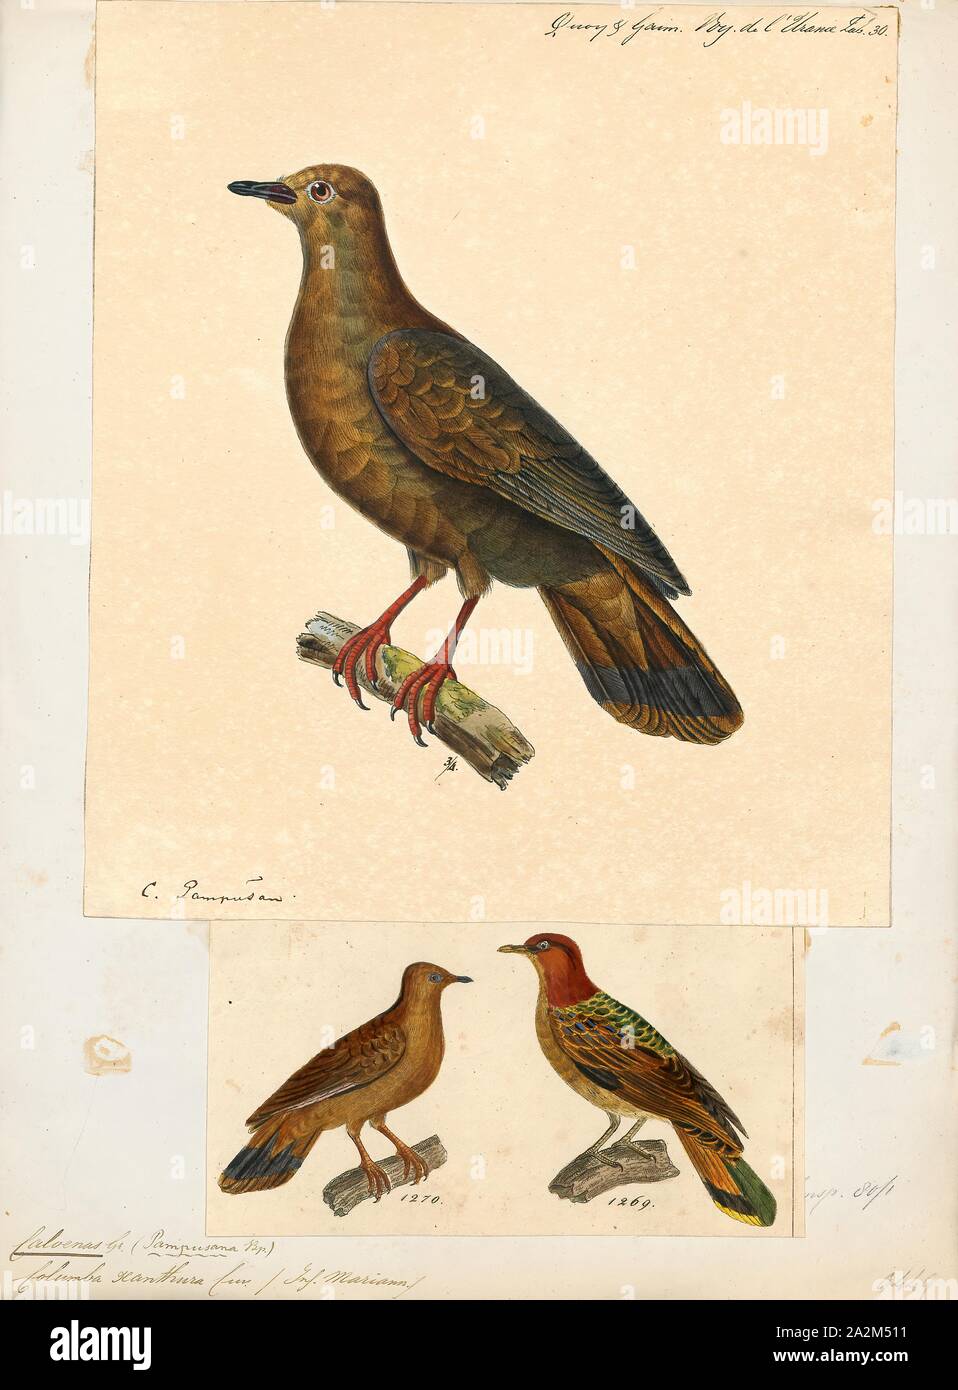 Caloenas xanthura, Drucken, Caloenas ist eine Gattung der Tauben. Der einzige lebende Arten ist die Kragentaube (C. nicobarica)., 1700-1880 Stockfoto